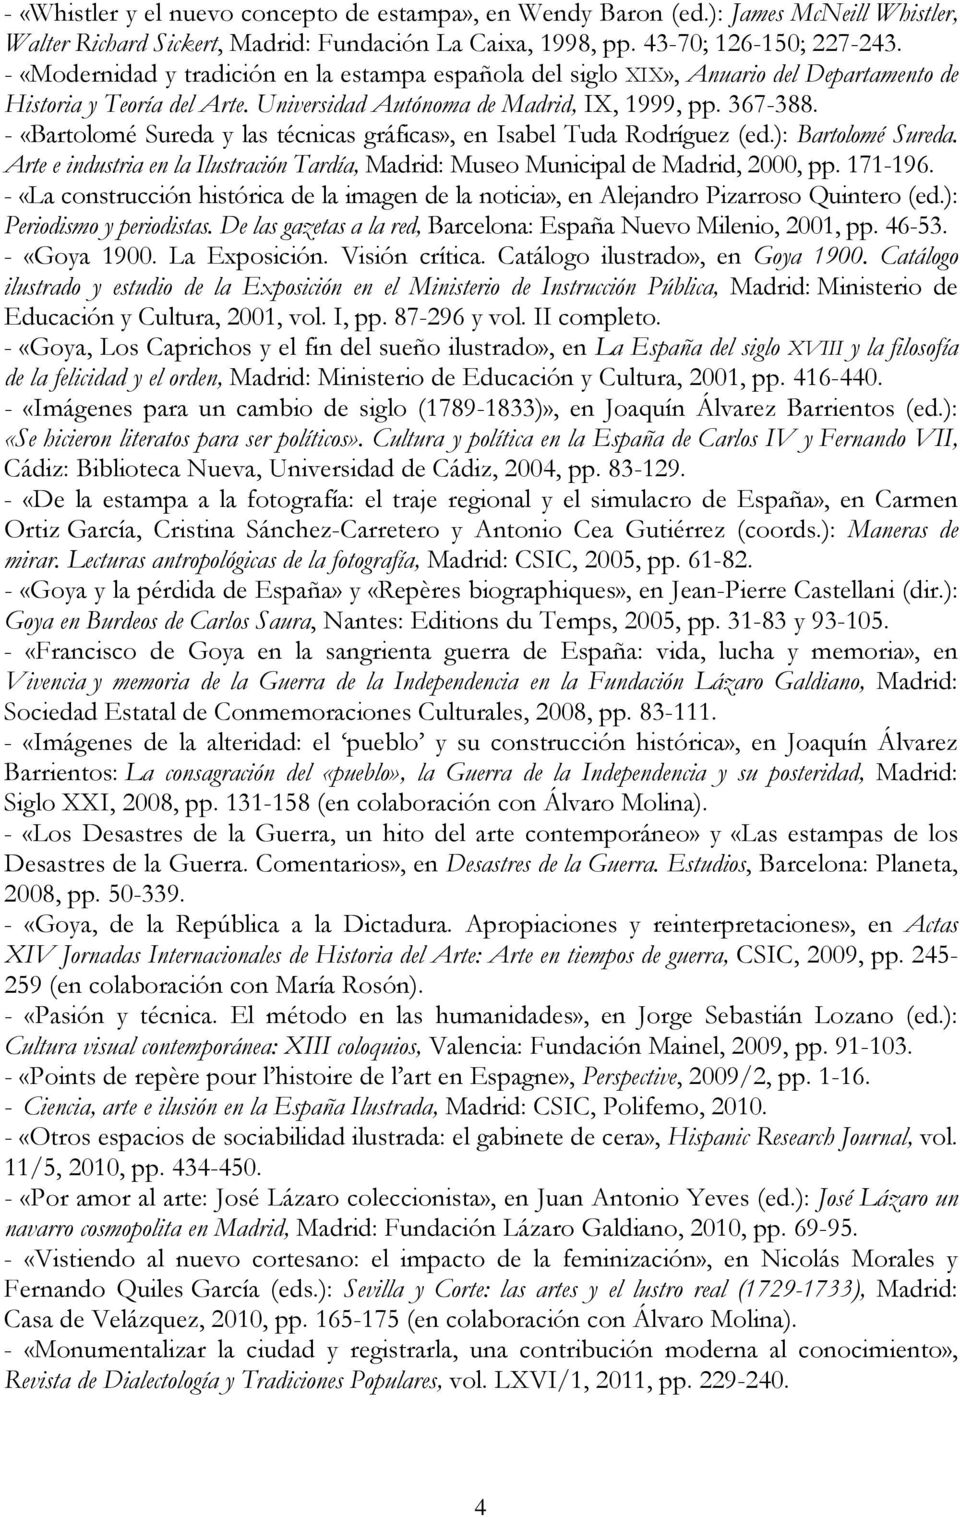 - «Bartolomé Sureda y las técnicas gráficas», en Isabel Tuda Rodríguez (ed.): Bartolomé Sureda. Arte e industria en la Ilustración Tardía, Madrid: Museo Municipal de Madrid, 2000, pp. 171-196.